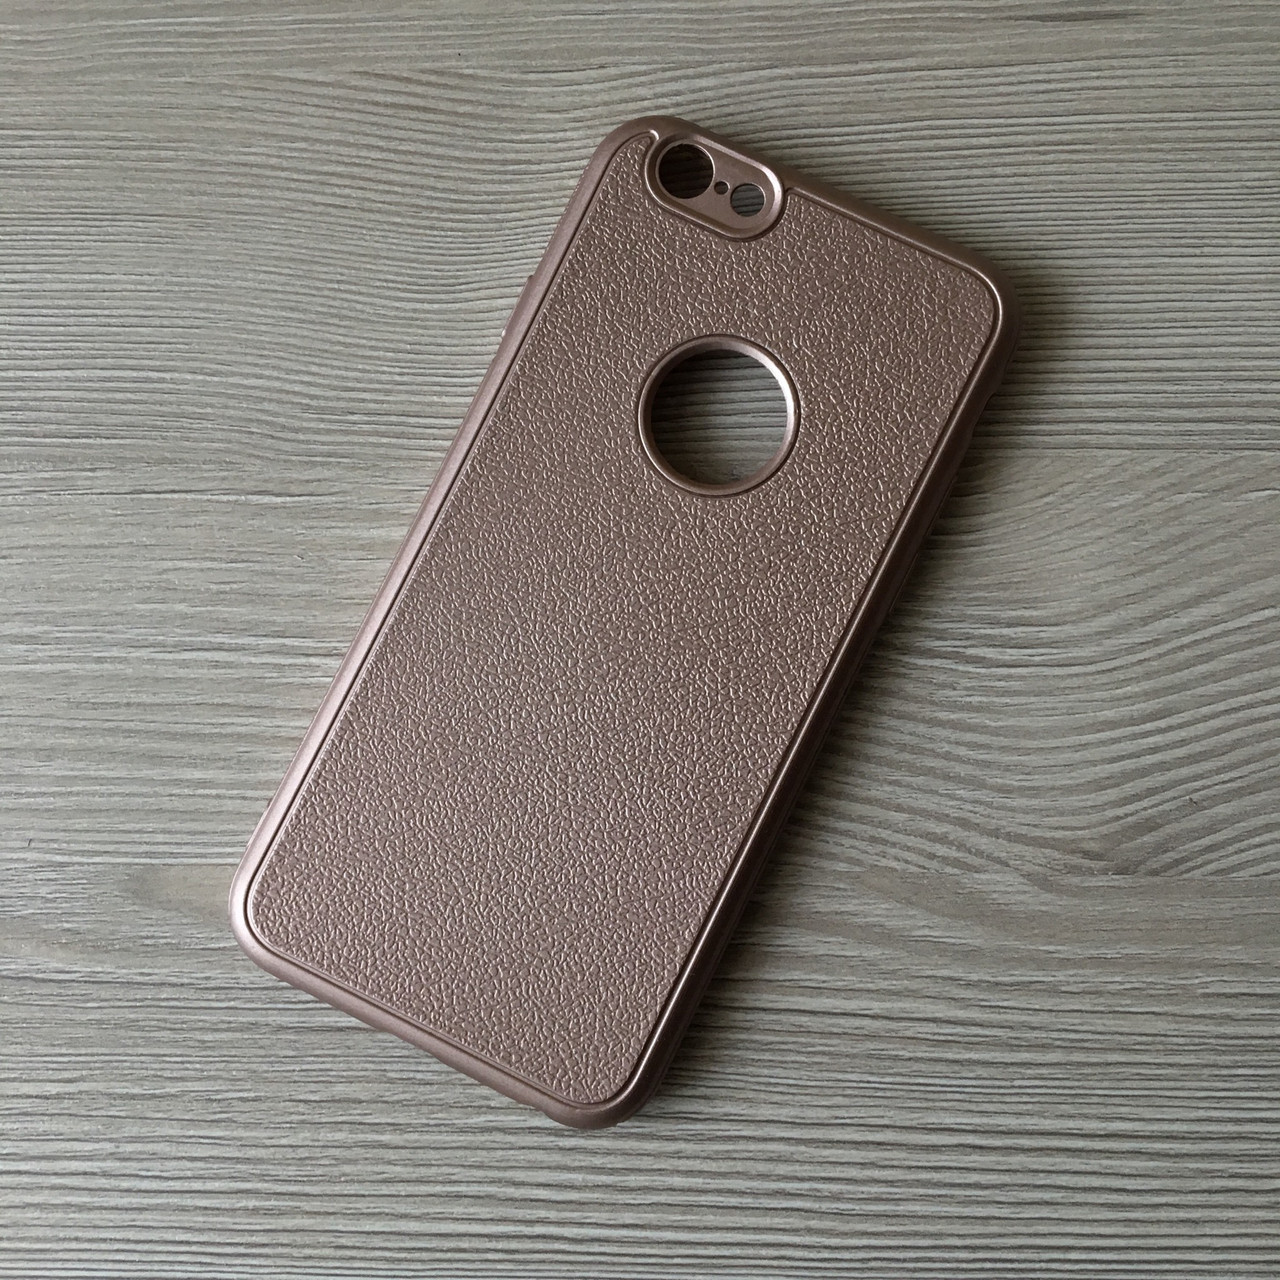 Розовое золото матовый силиконовый чехол iphone 7/8 в упаковке